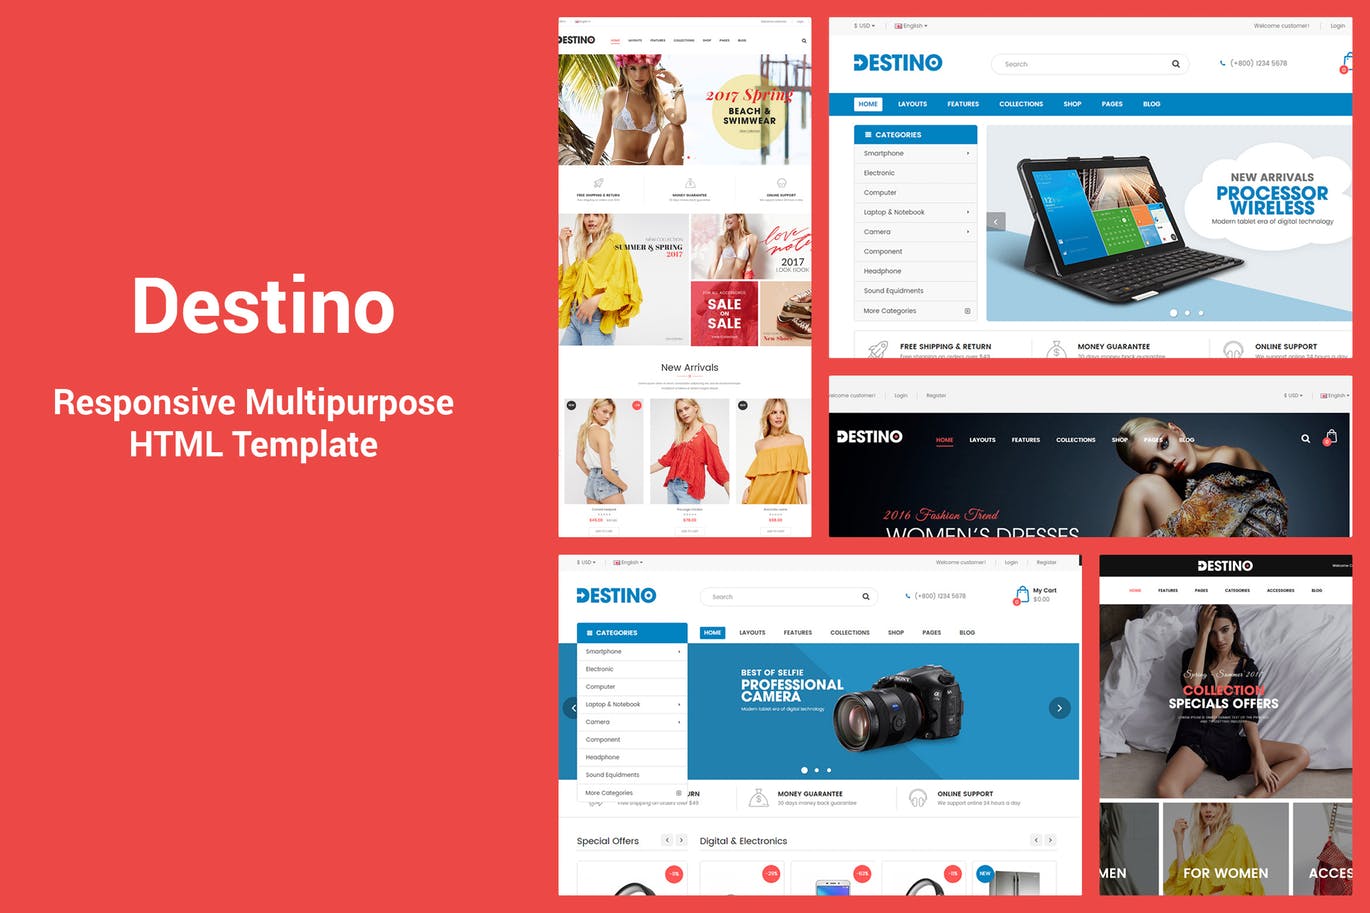 响应式设计多用途网上商城HTML模板素材库精选 Destino – Responsive & MultiPurpose HTML5 Template插图